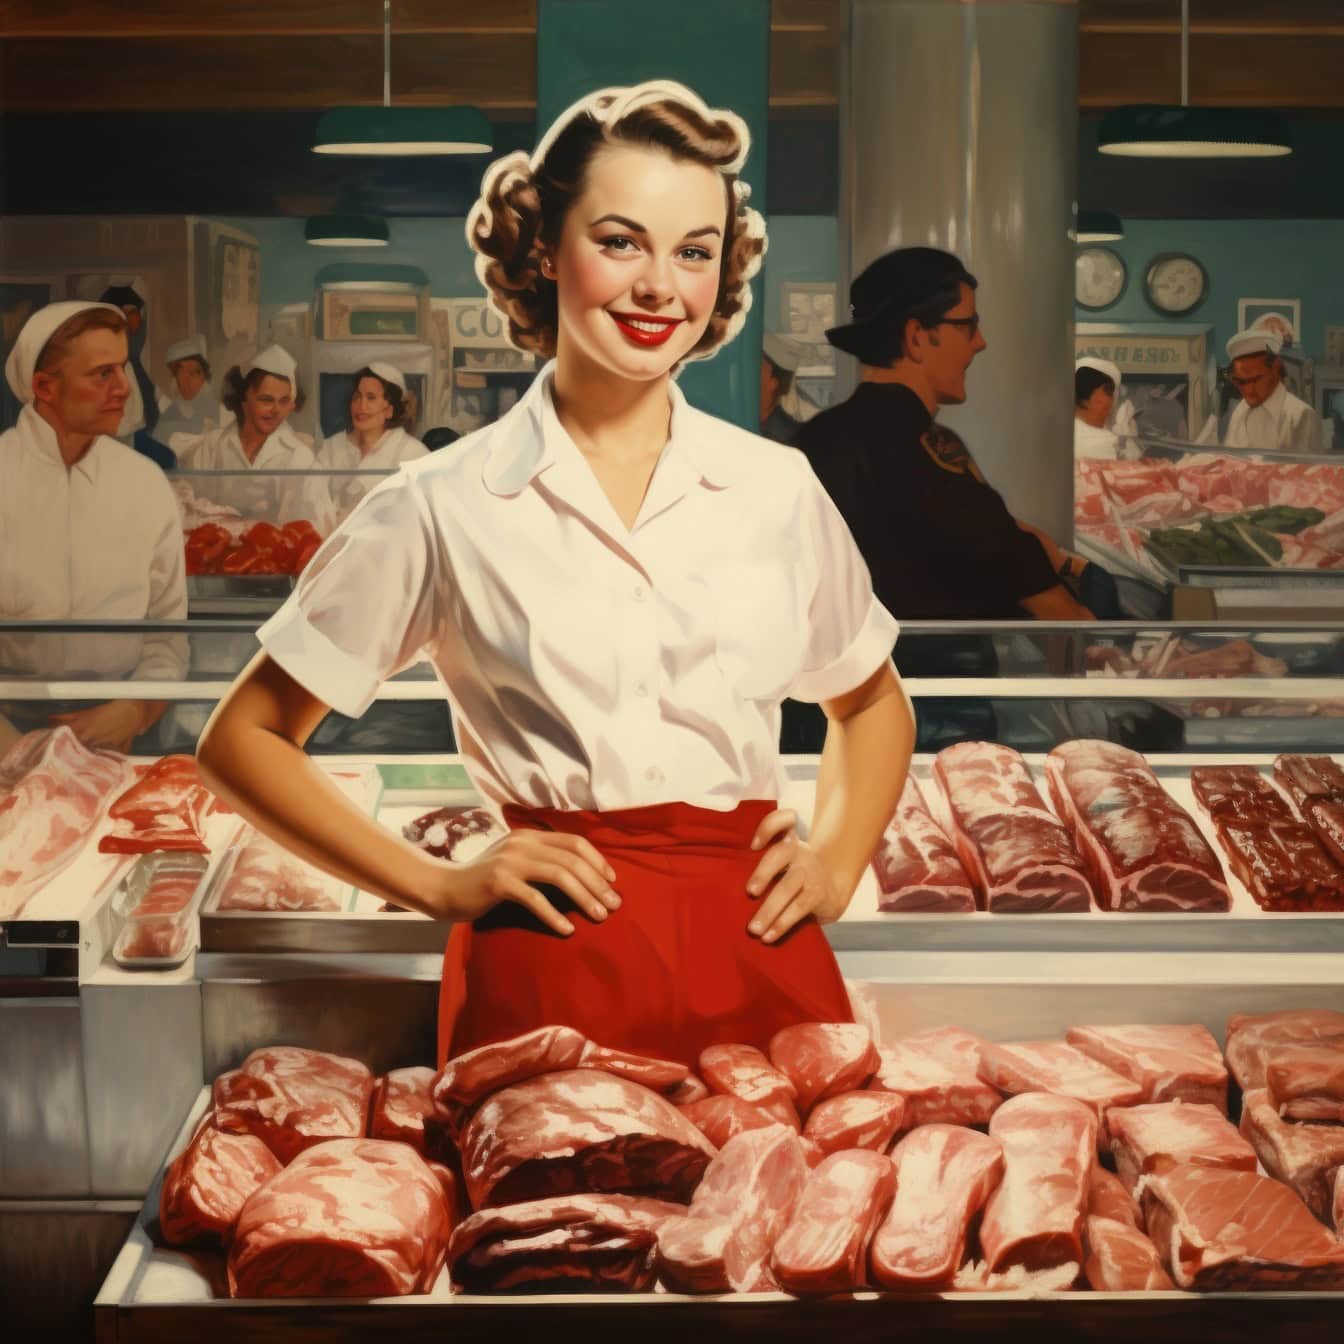 En slaktarkvinna som står framför kött i en slaktare eller stormarknad, en illustration i stil med 1960-talet